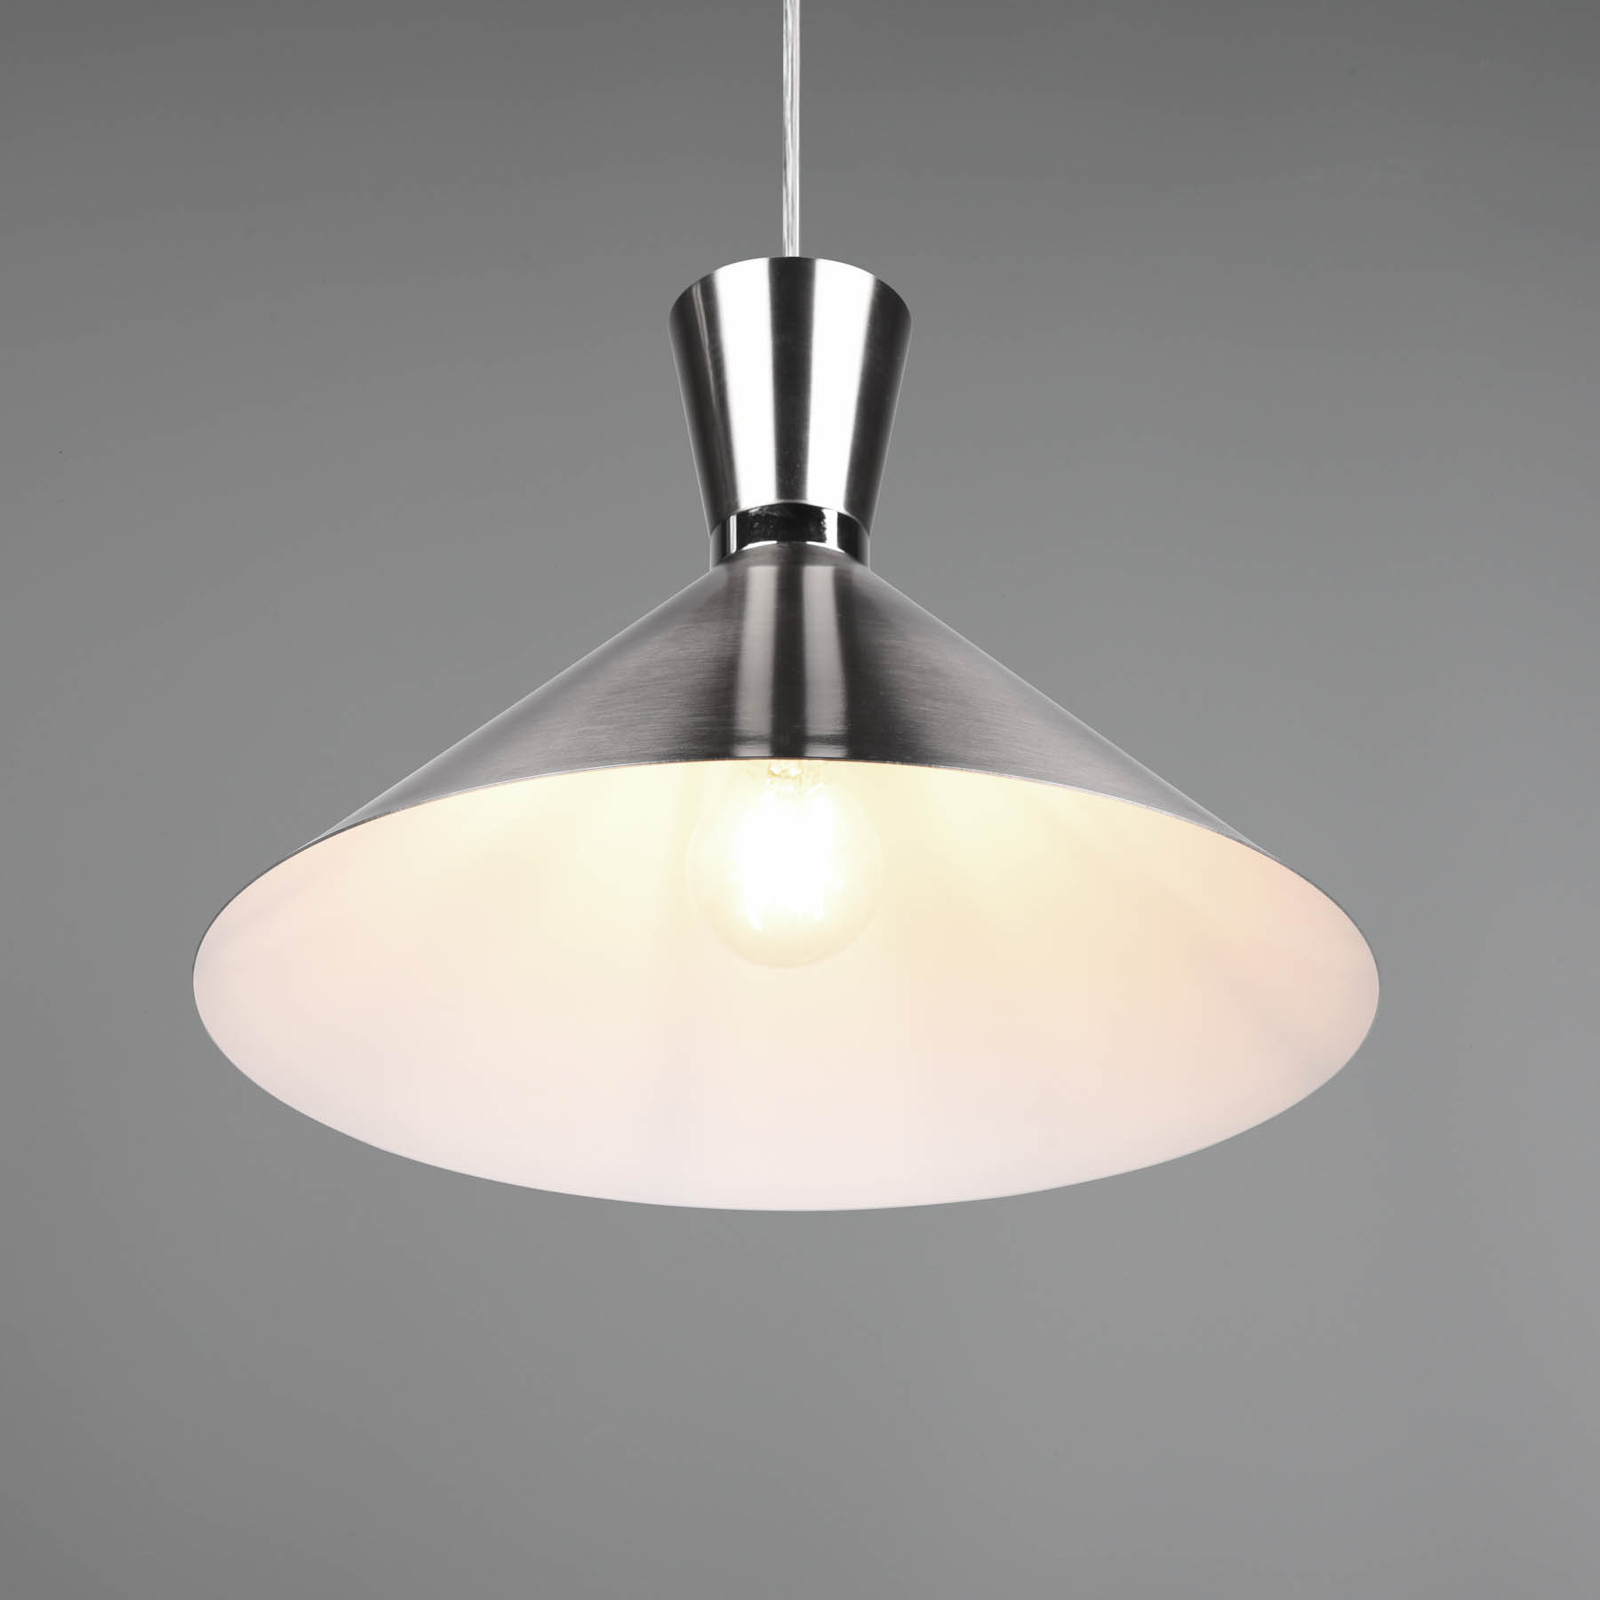 Hanglamp Enzo, 1-lamp, Ø 35 cm, nikkel